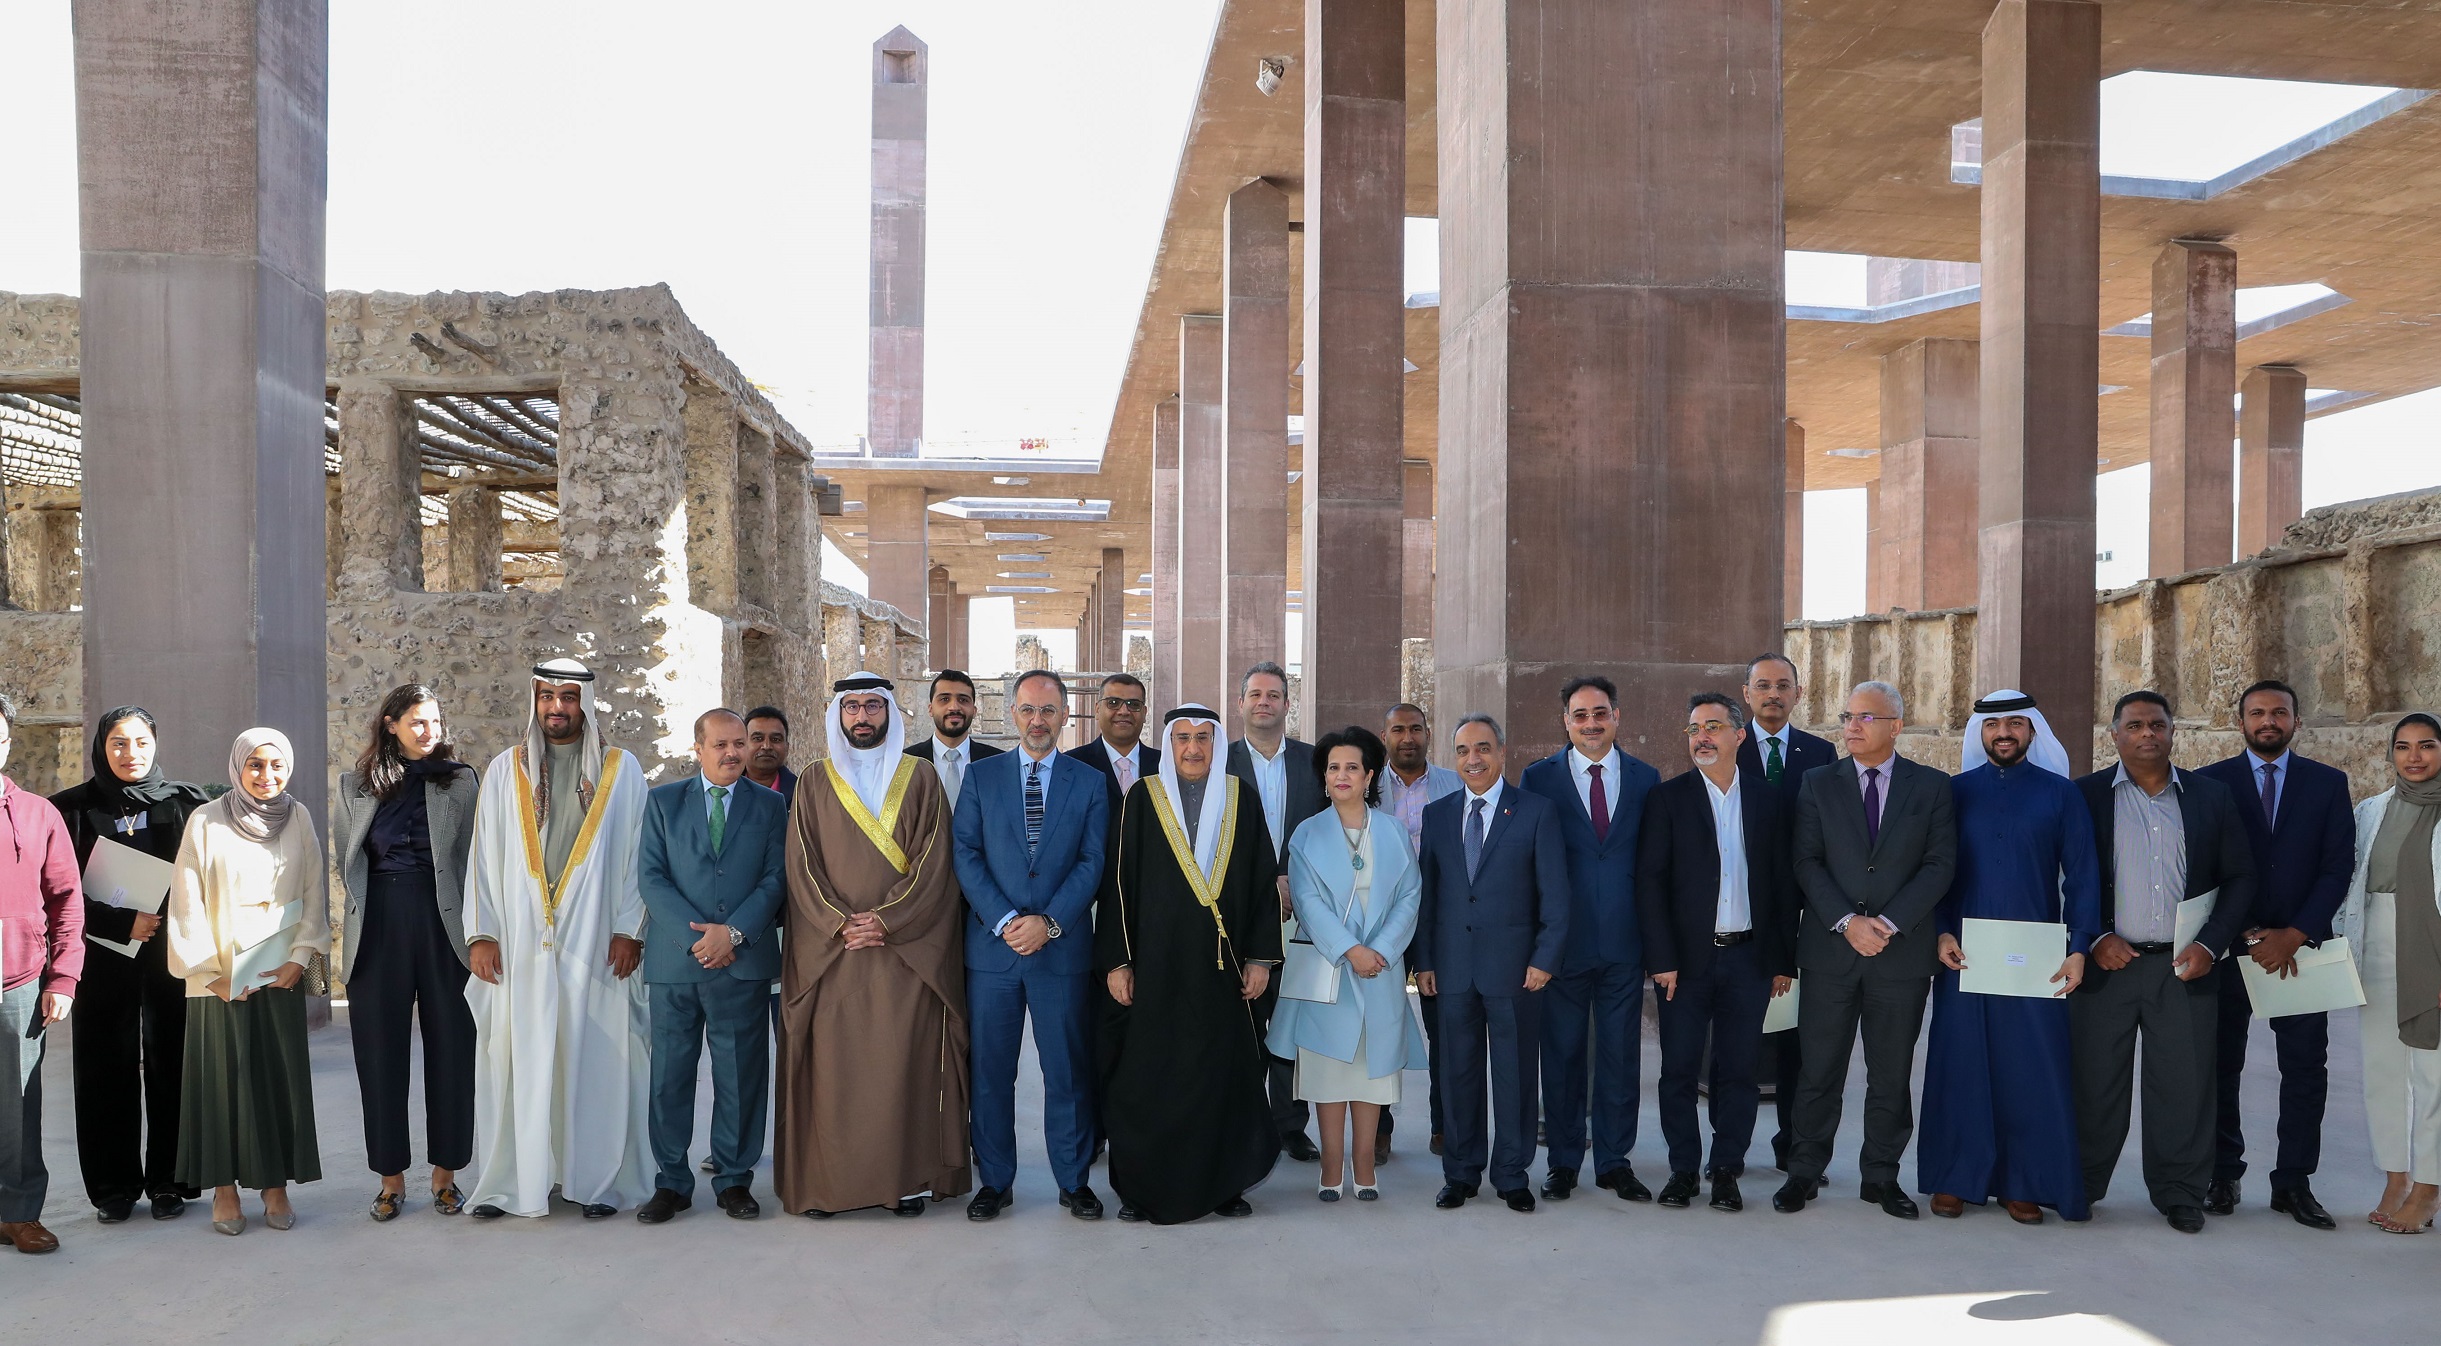 احتفال في البحرين بالمشروع الفائز بجائزة الآغا خان للعمارة “إعادة إحياء المحرق”